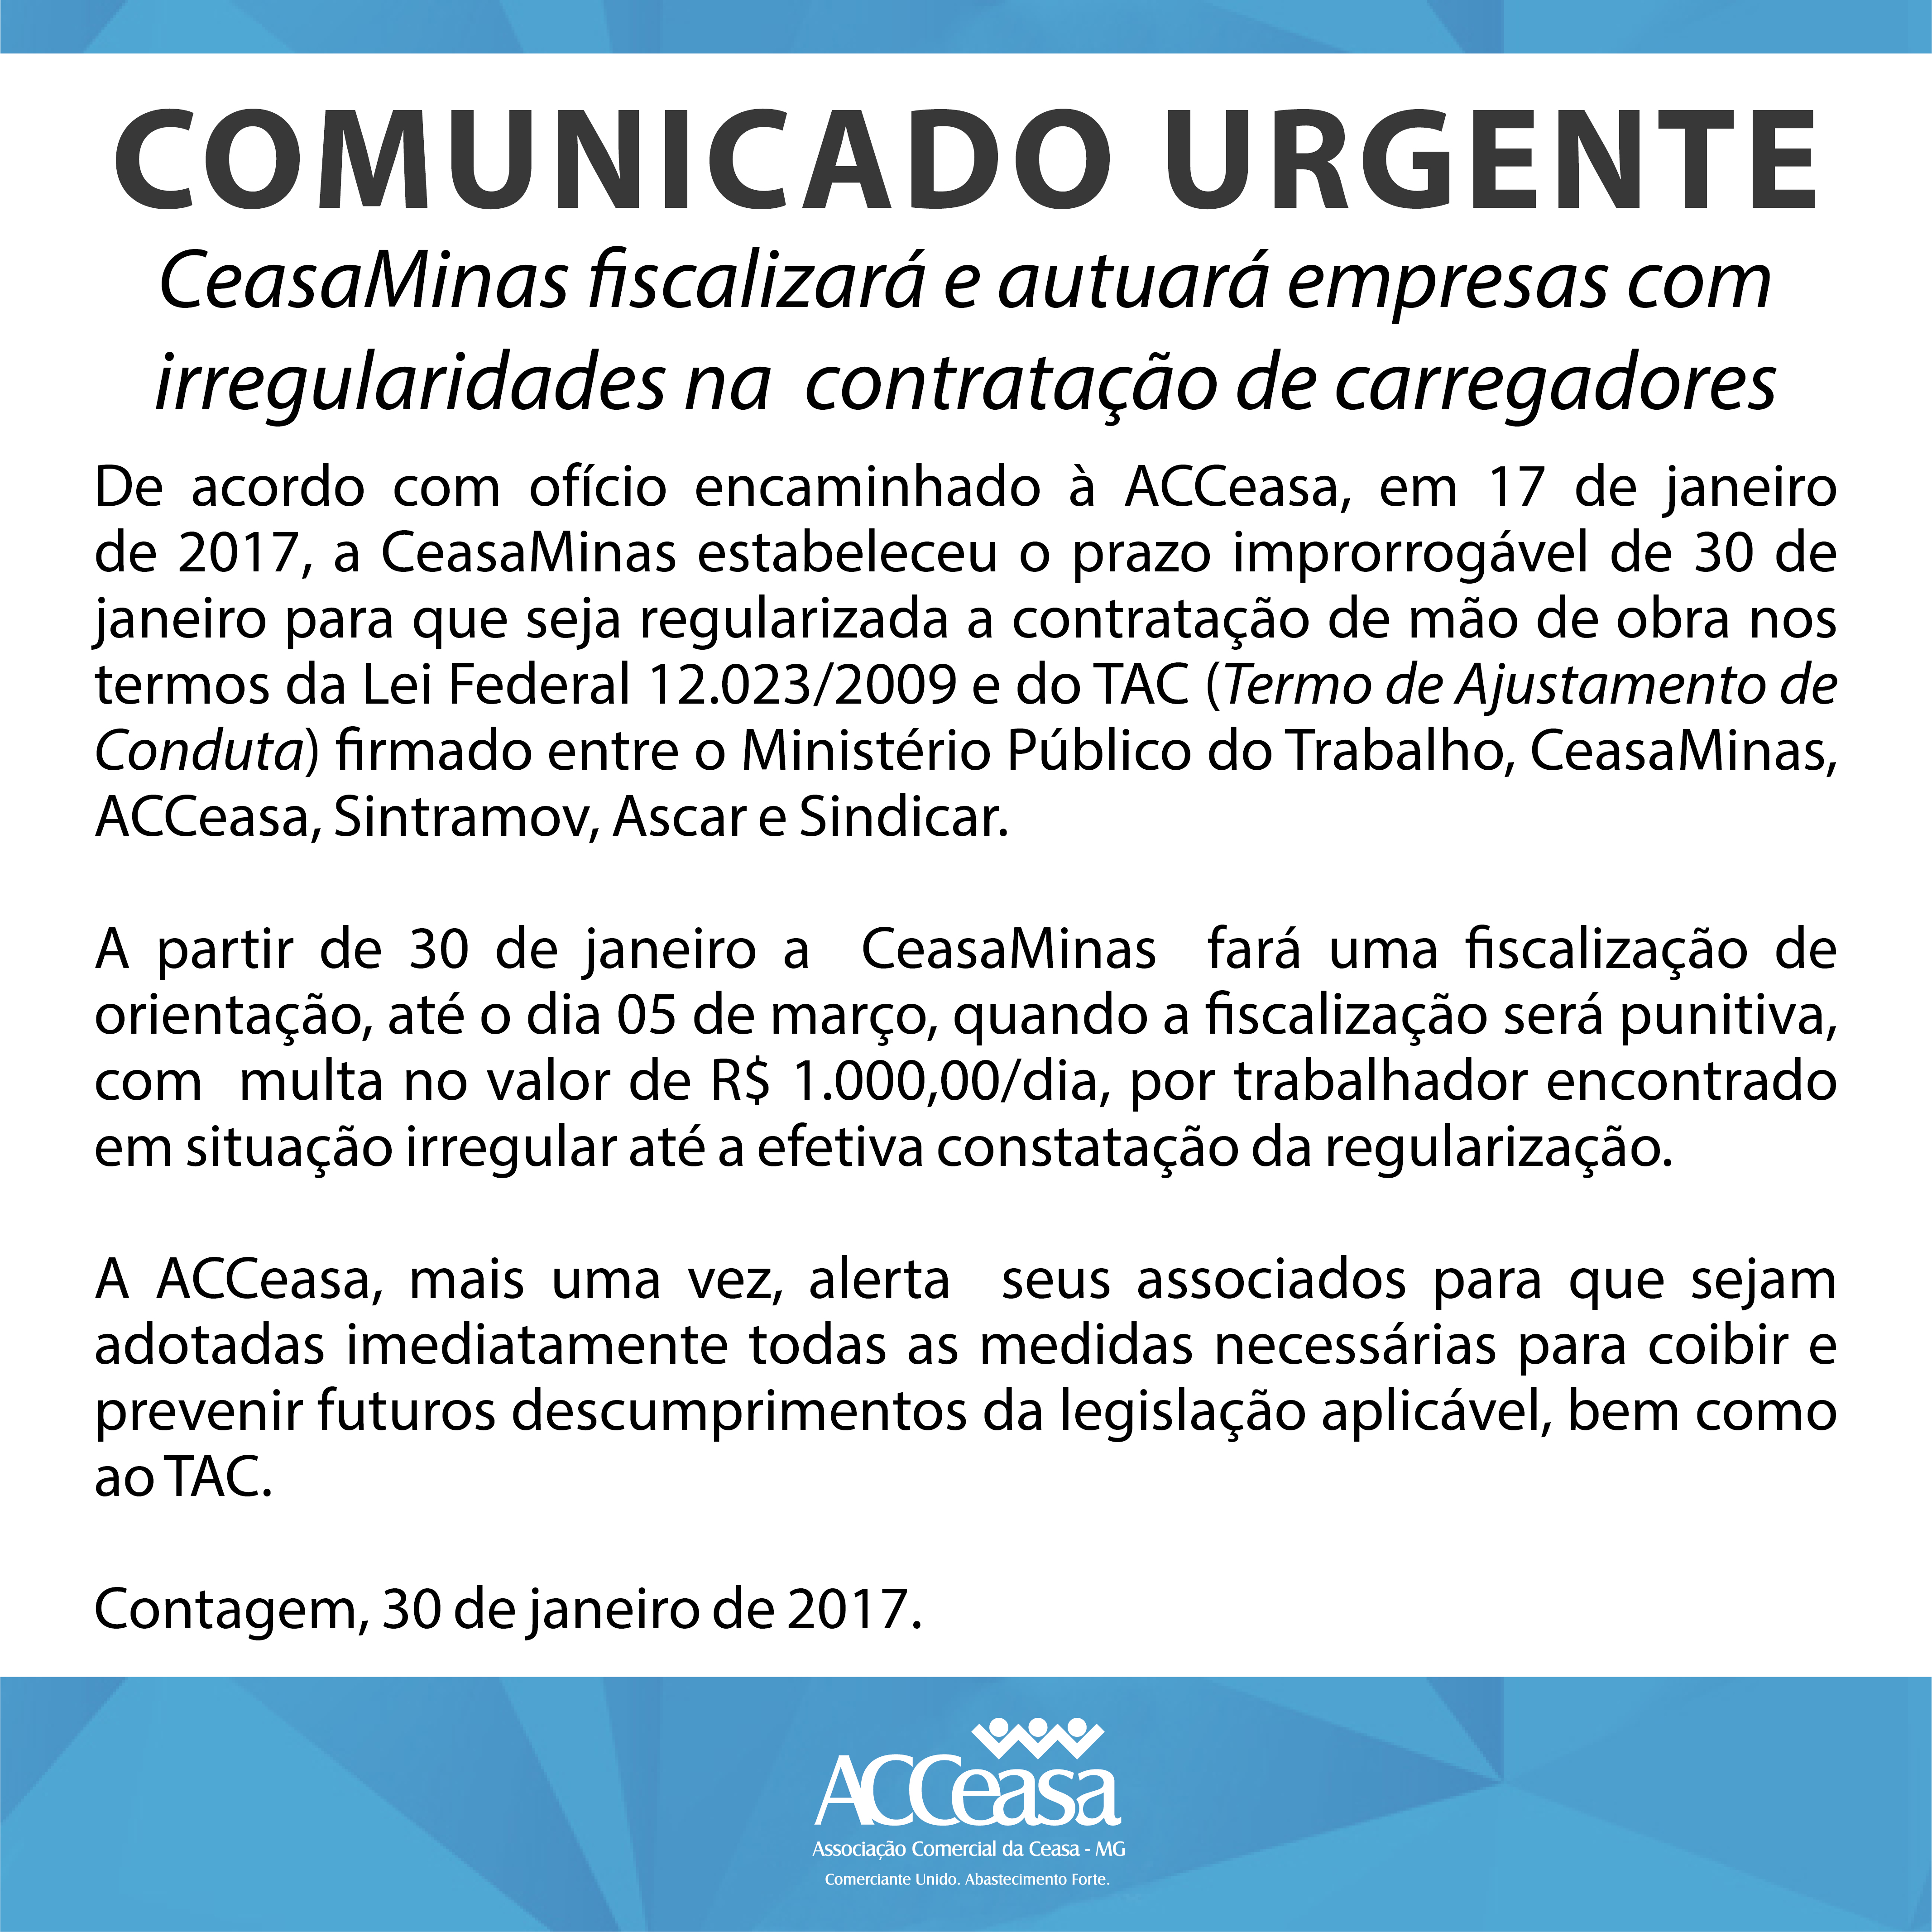 CeasaMinas fiscalizará e autuará empresas com irregularidades na contratação de carregadores